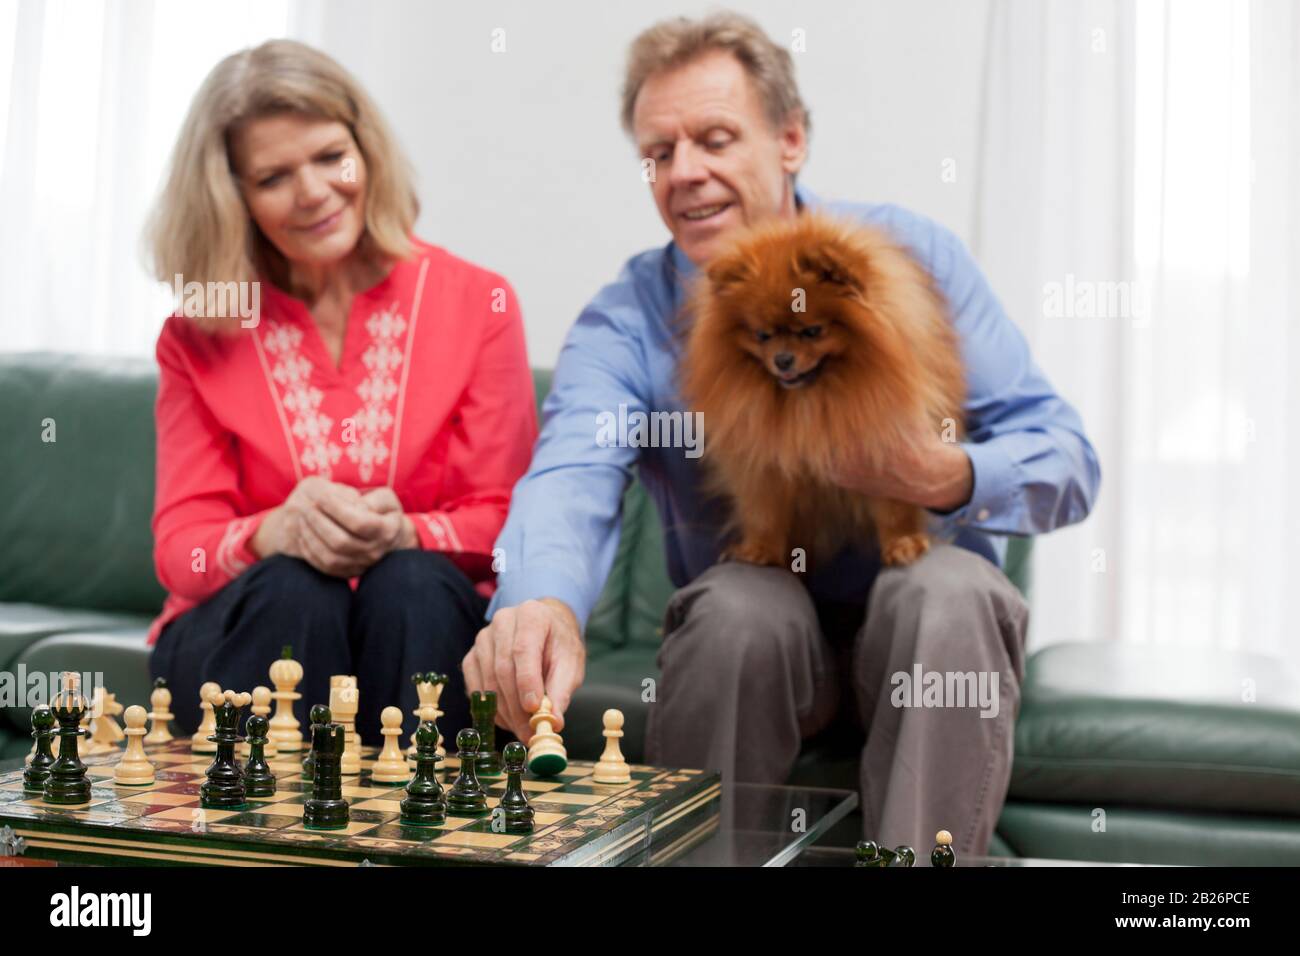 Reifes lächelndes Paar, das in einem hellen Wohnzimmer Schach spielt - konzentrieren Sie sich auf das Schachbrett im Vordergrund Stockfoto